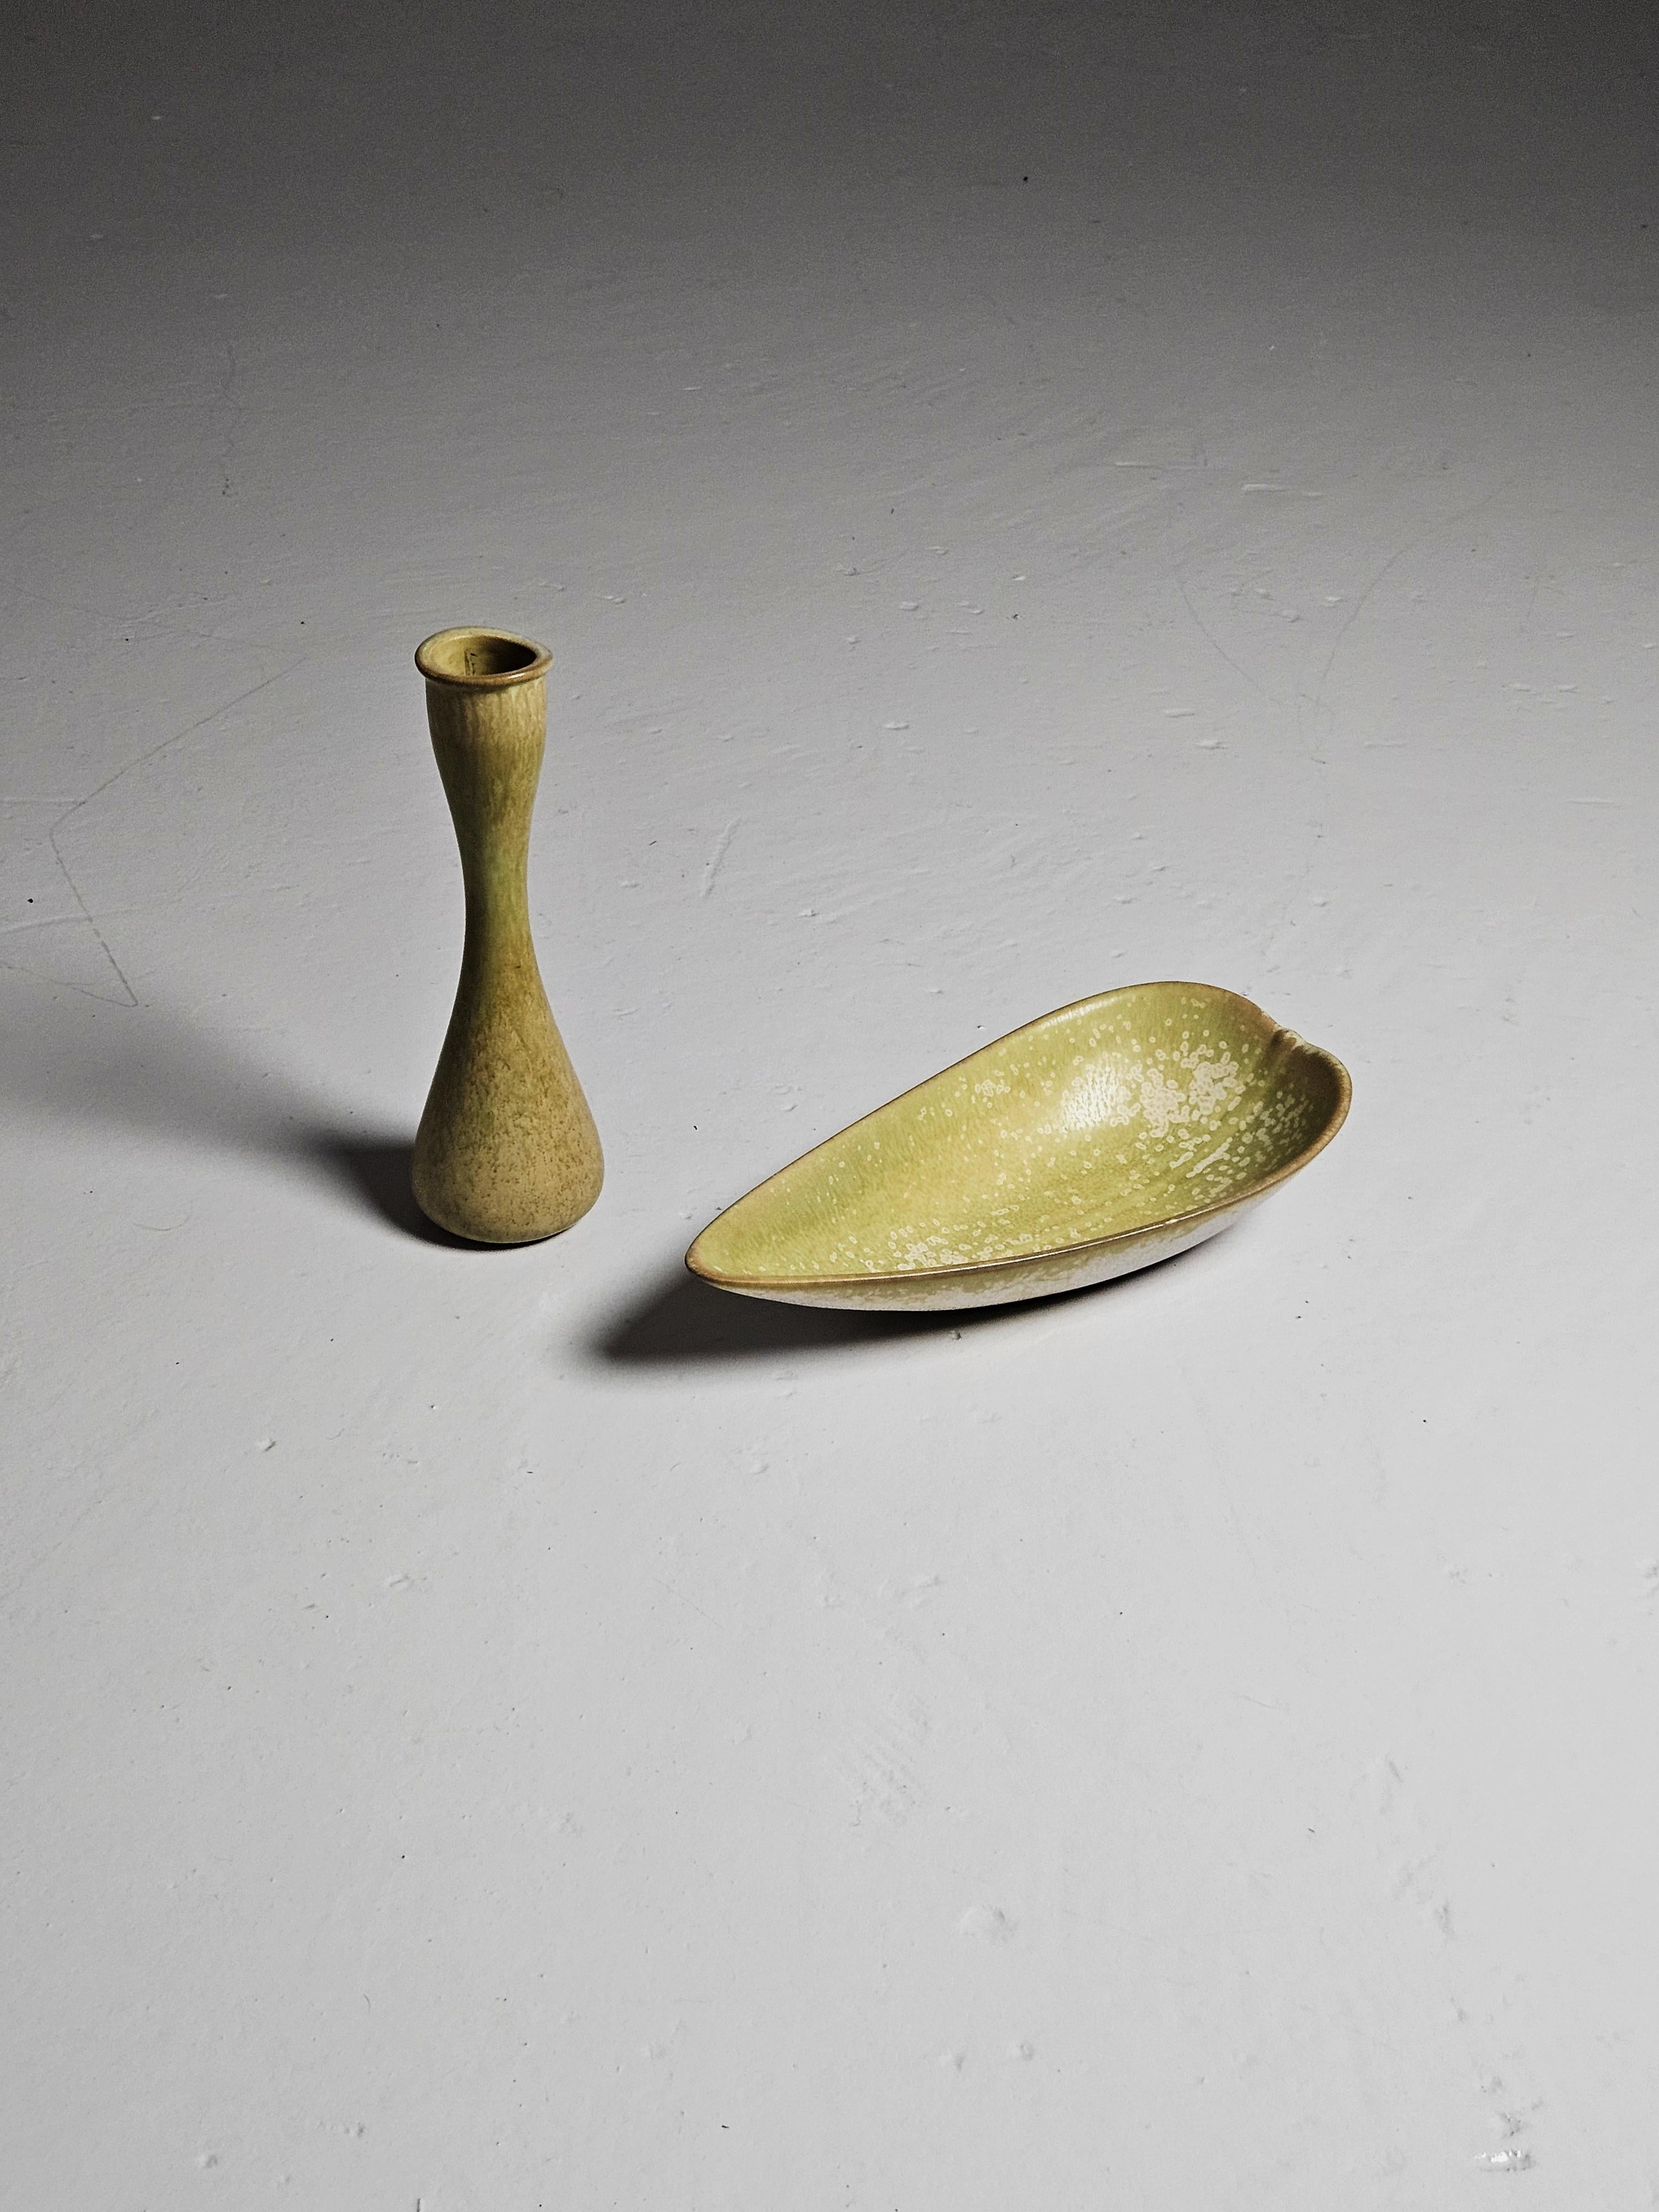 Schönes Set aus Vase und Schale von Gunnar Nylund, hergestellt von Rörstrand, Schweden, in den 1950er Jahren. 

Beide mit einer weichen grünen Glasur. Schale mit weißen Flecken. 

Abmessungen der Schale: Höhe: 6 cm (2,36 Zoll) Breite: 13,5 cm (5,31